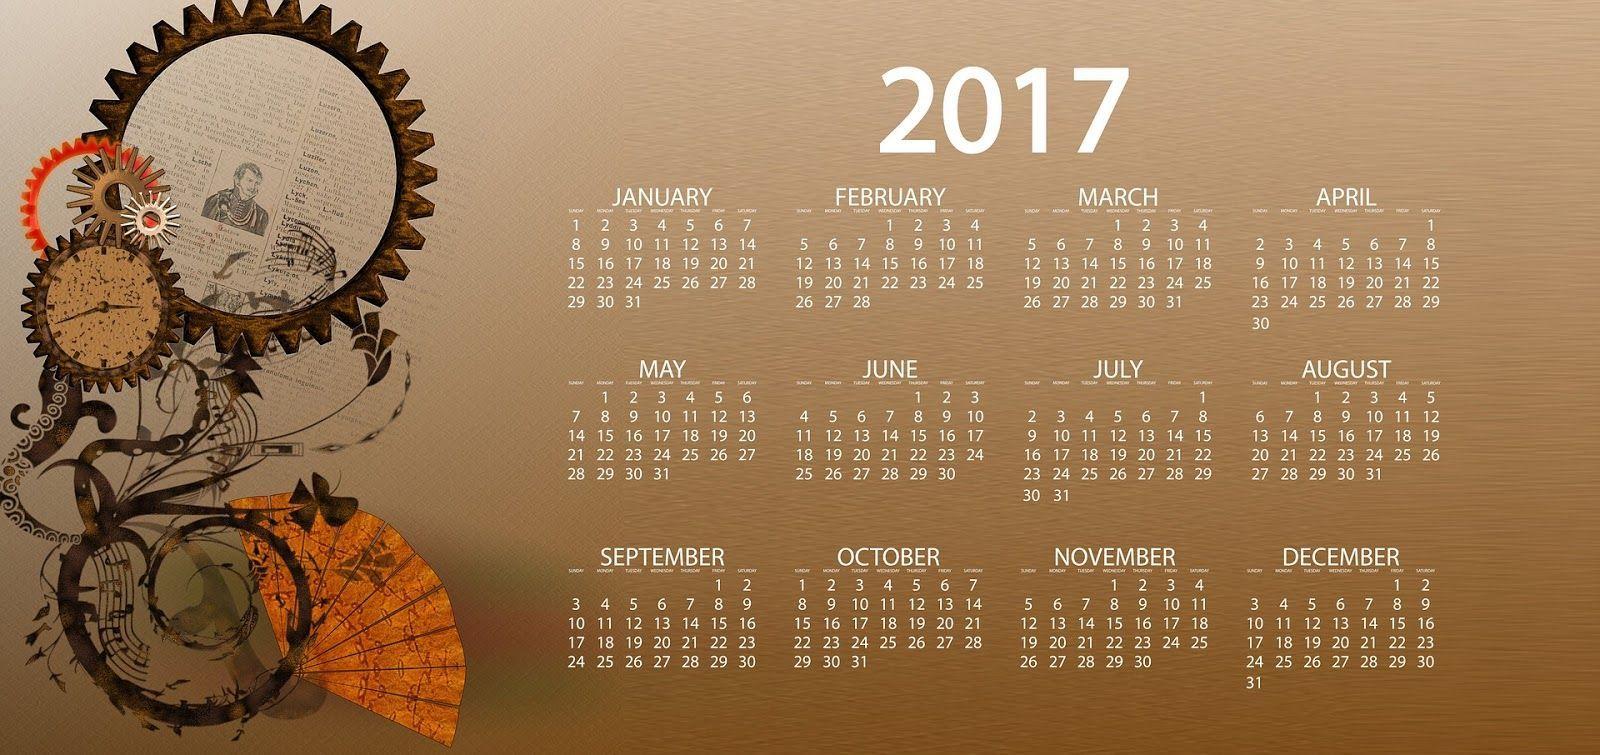 Photo Calendars 2017 Wallpaper. Calendar Printable 2017